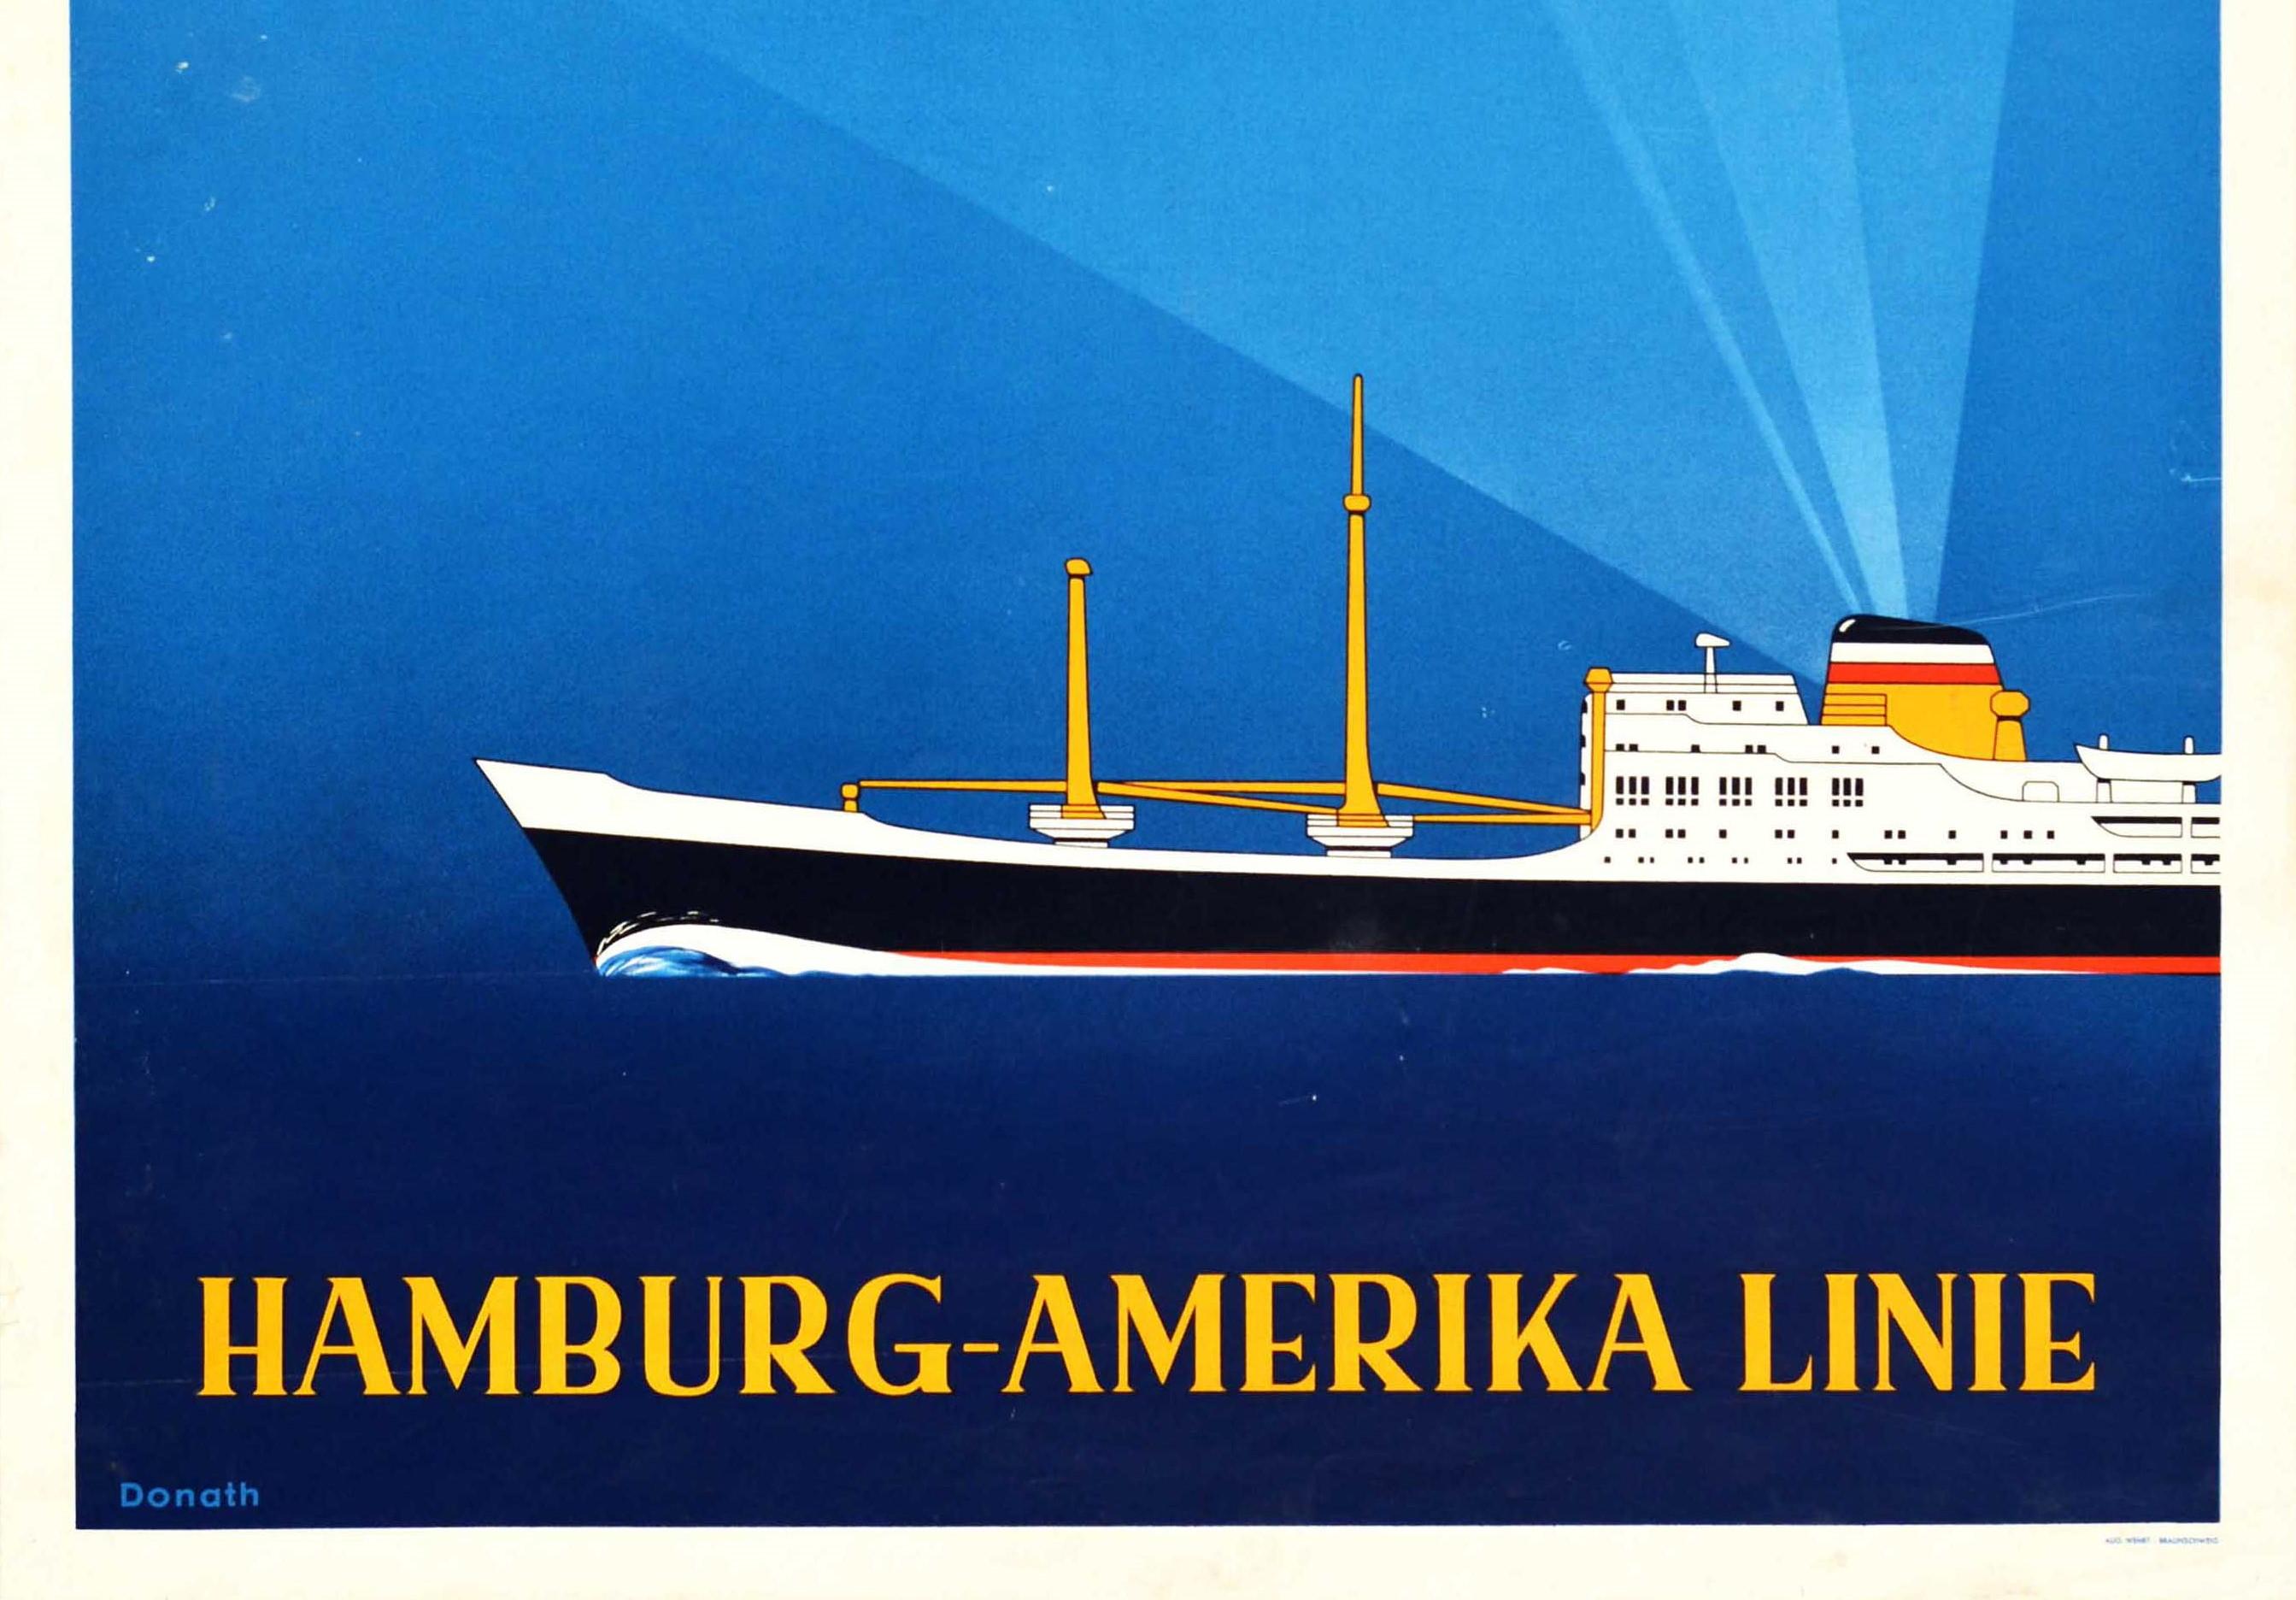 Affiche originale de croisière vintage pour la Hamburg-Amerika Linie Schnell Sicher Zuverlassig / Fast Safe Reliable. Un paquebot naviguant sur un fond bleu avec le texte et le logo HAPAG au-dessus éclairé par les rayons de la cheminée du navire et